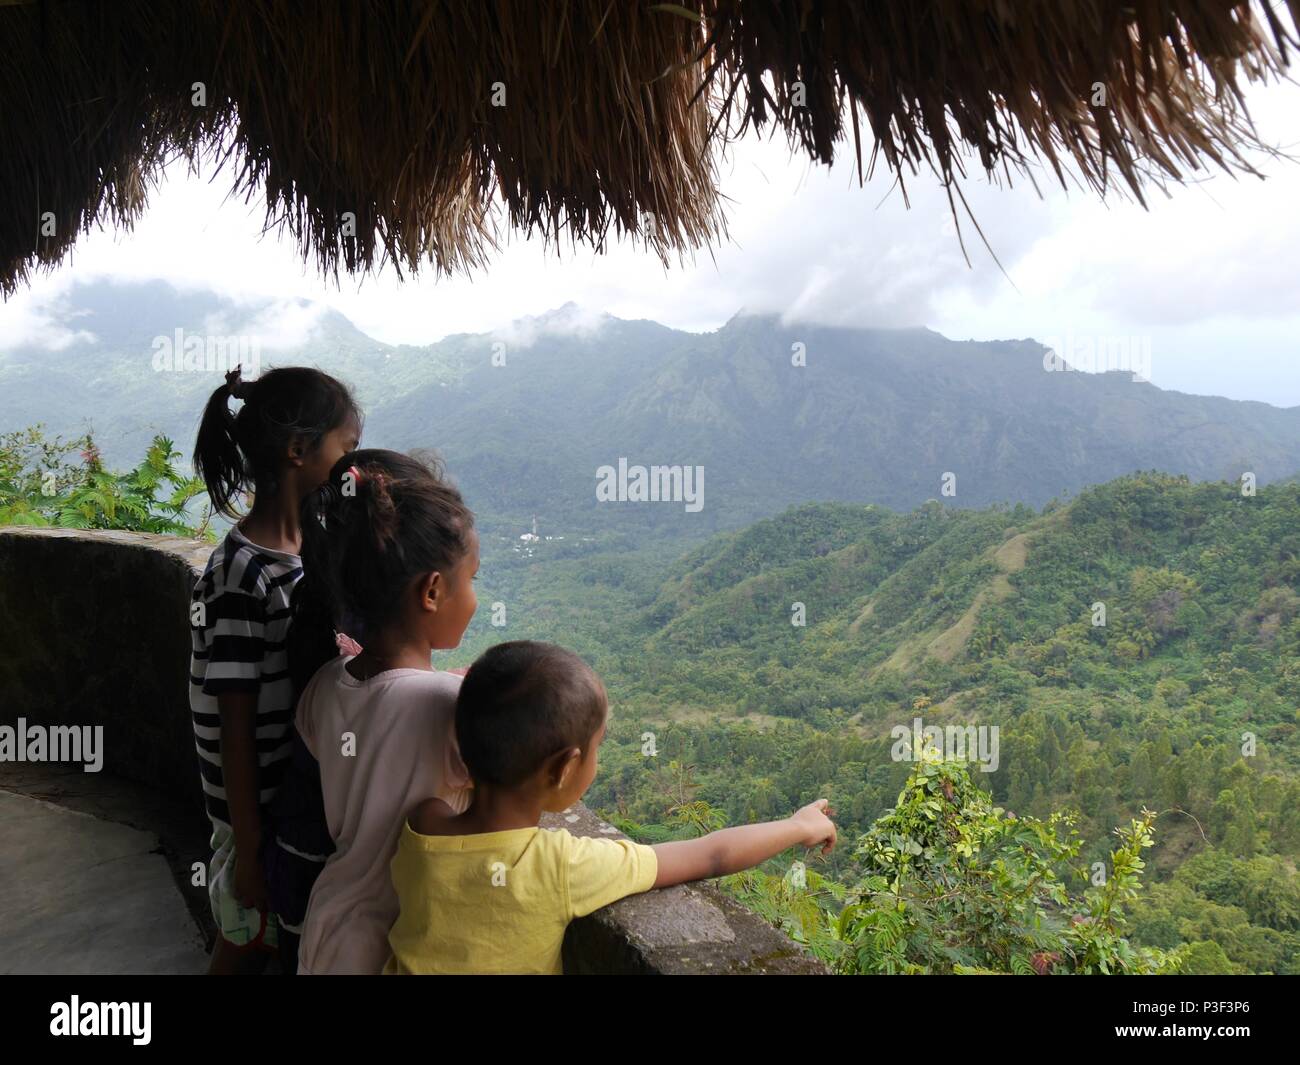 Trois jeunes enfants indonésiens d'admirer une vue panoramique sur les montagnes sur l'île indonésienne de Flores et le petit garçon de points à quelque chose Banque D'Images